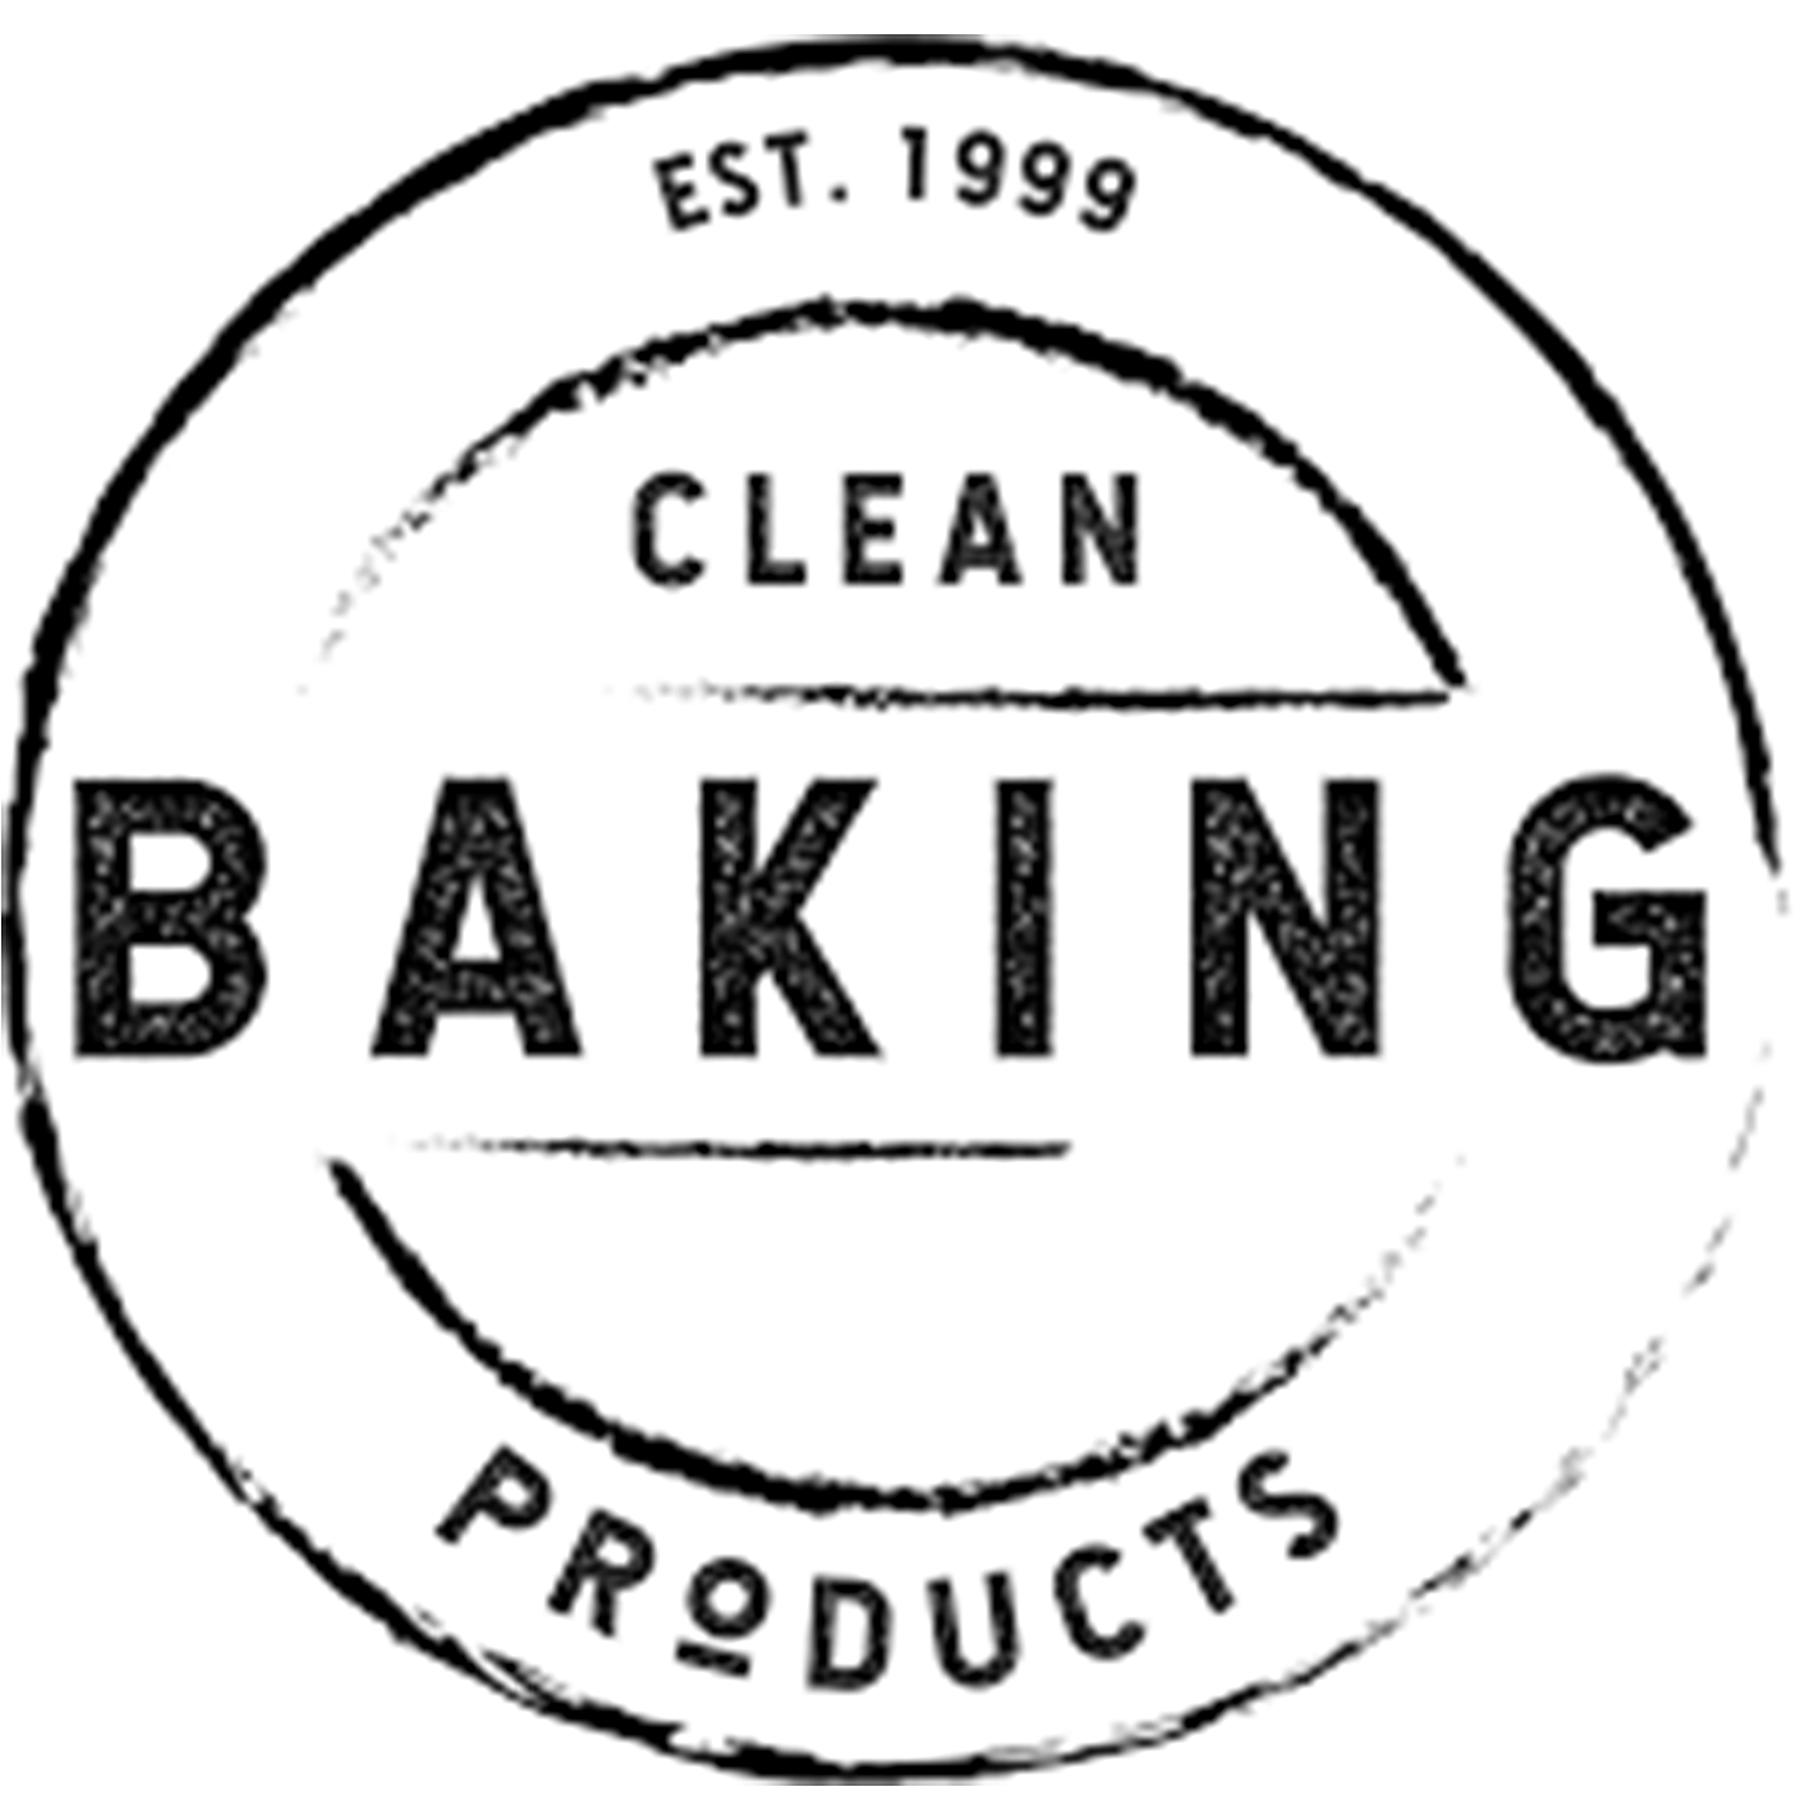 Clean baking products merk